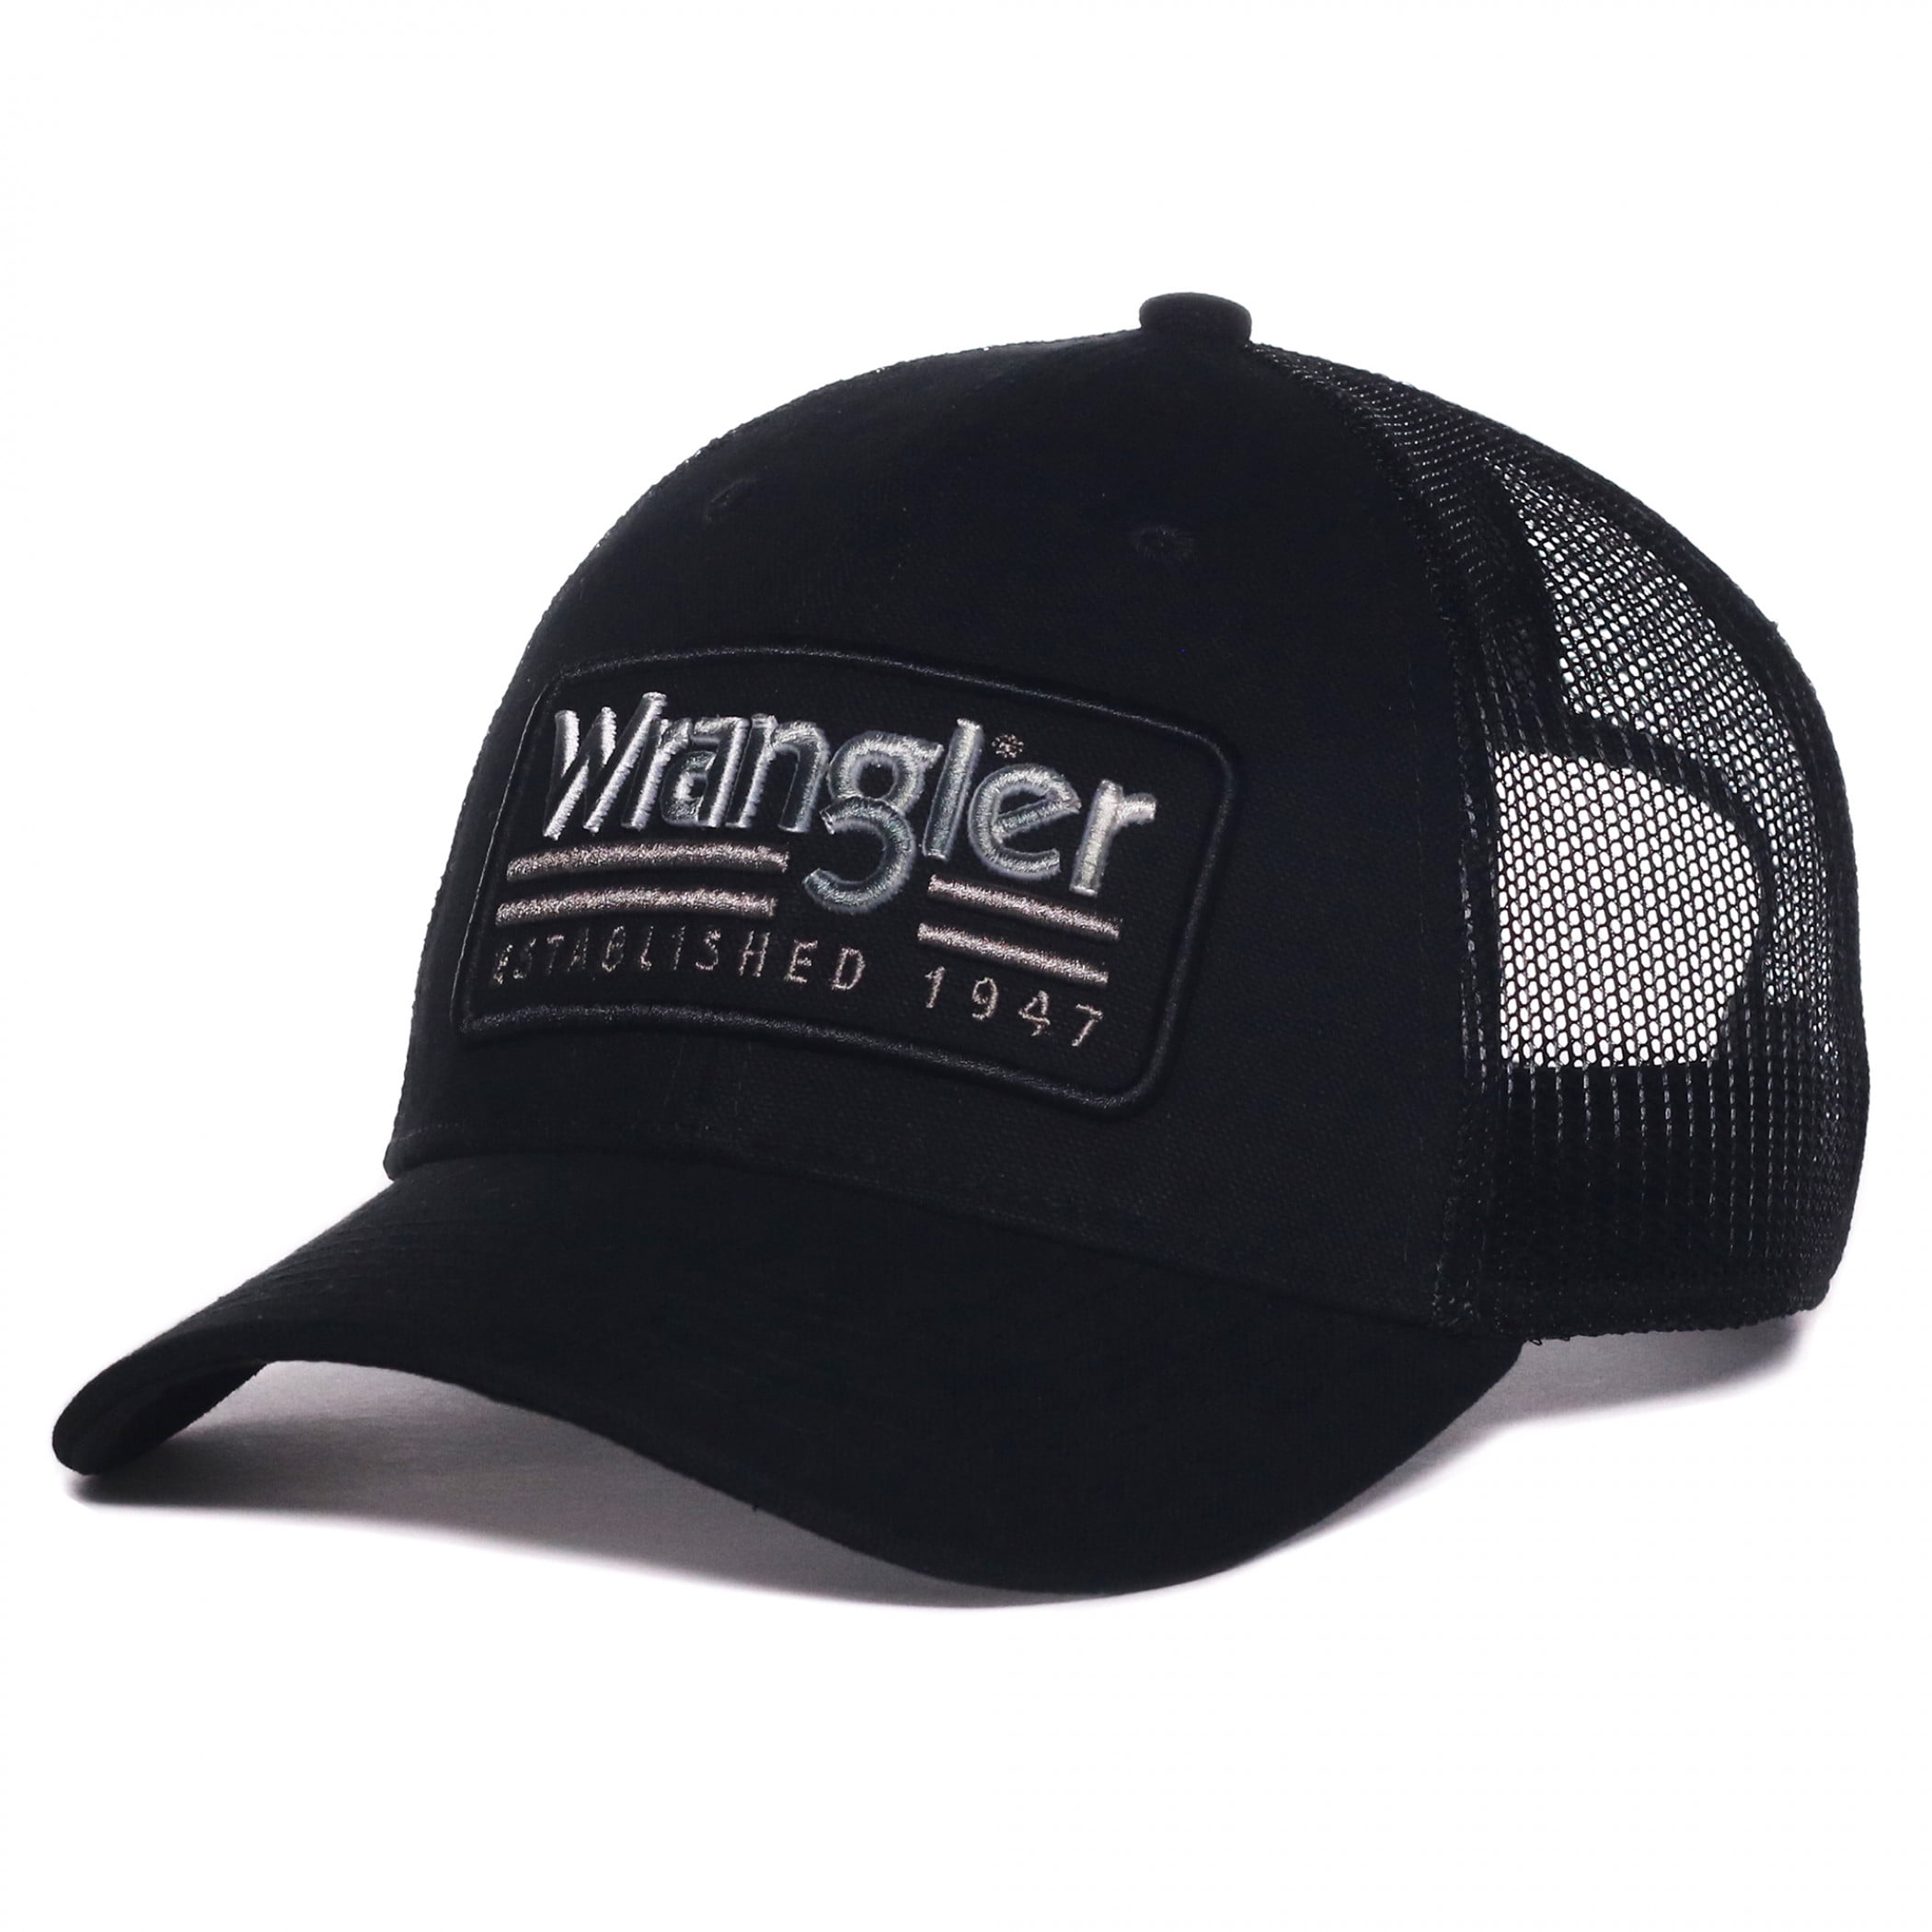 Wrangler Logo Established 1947 Patch Pre-Curved Adjustable Trucker Hat -  